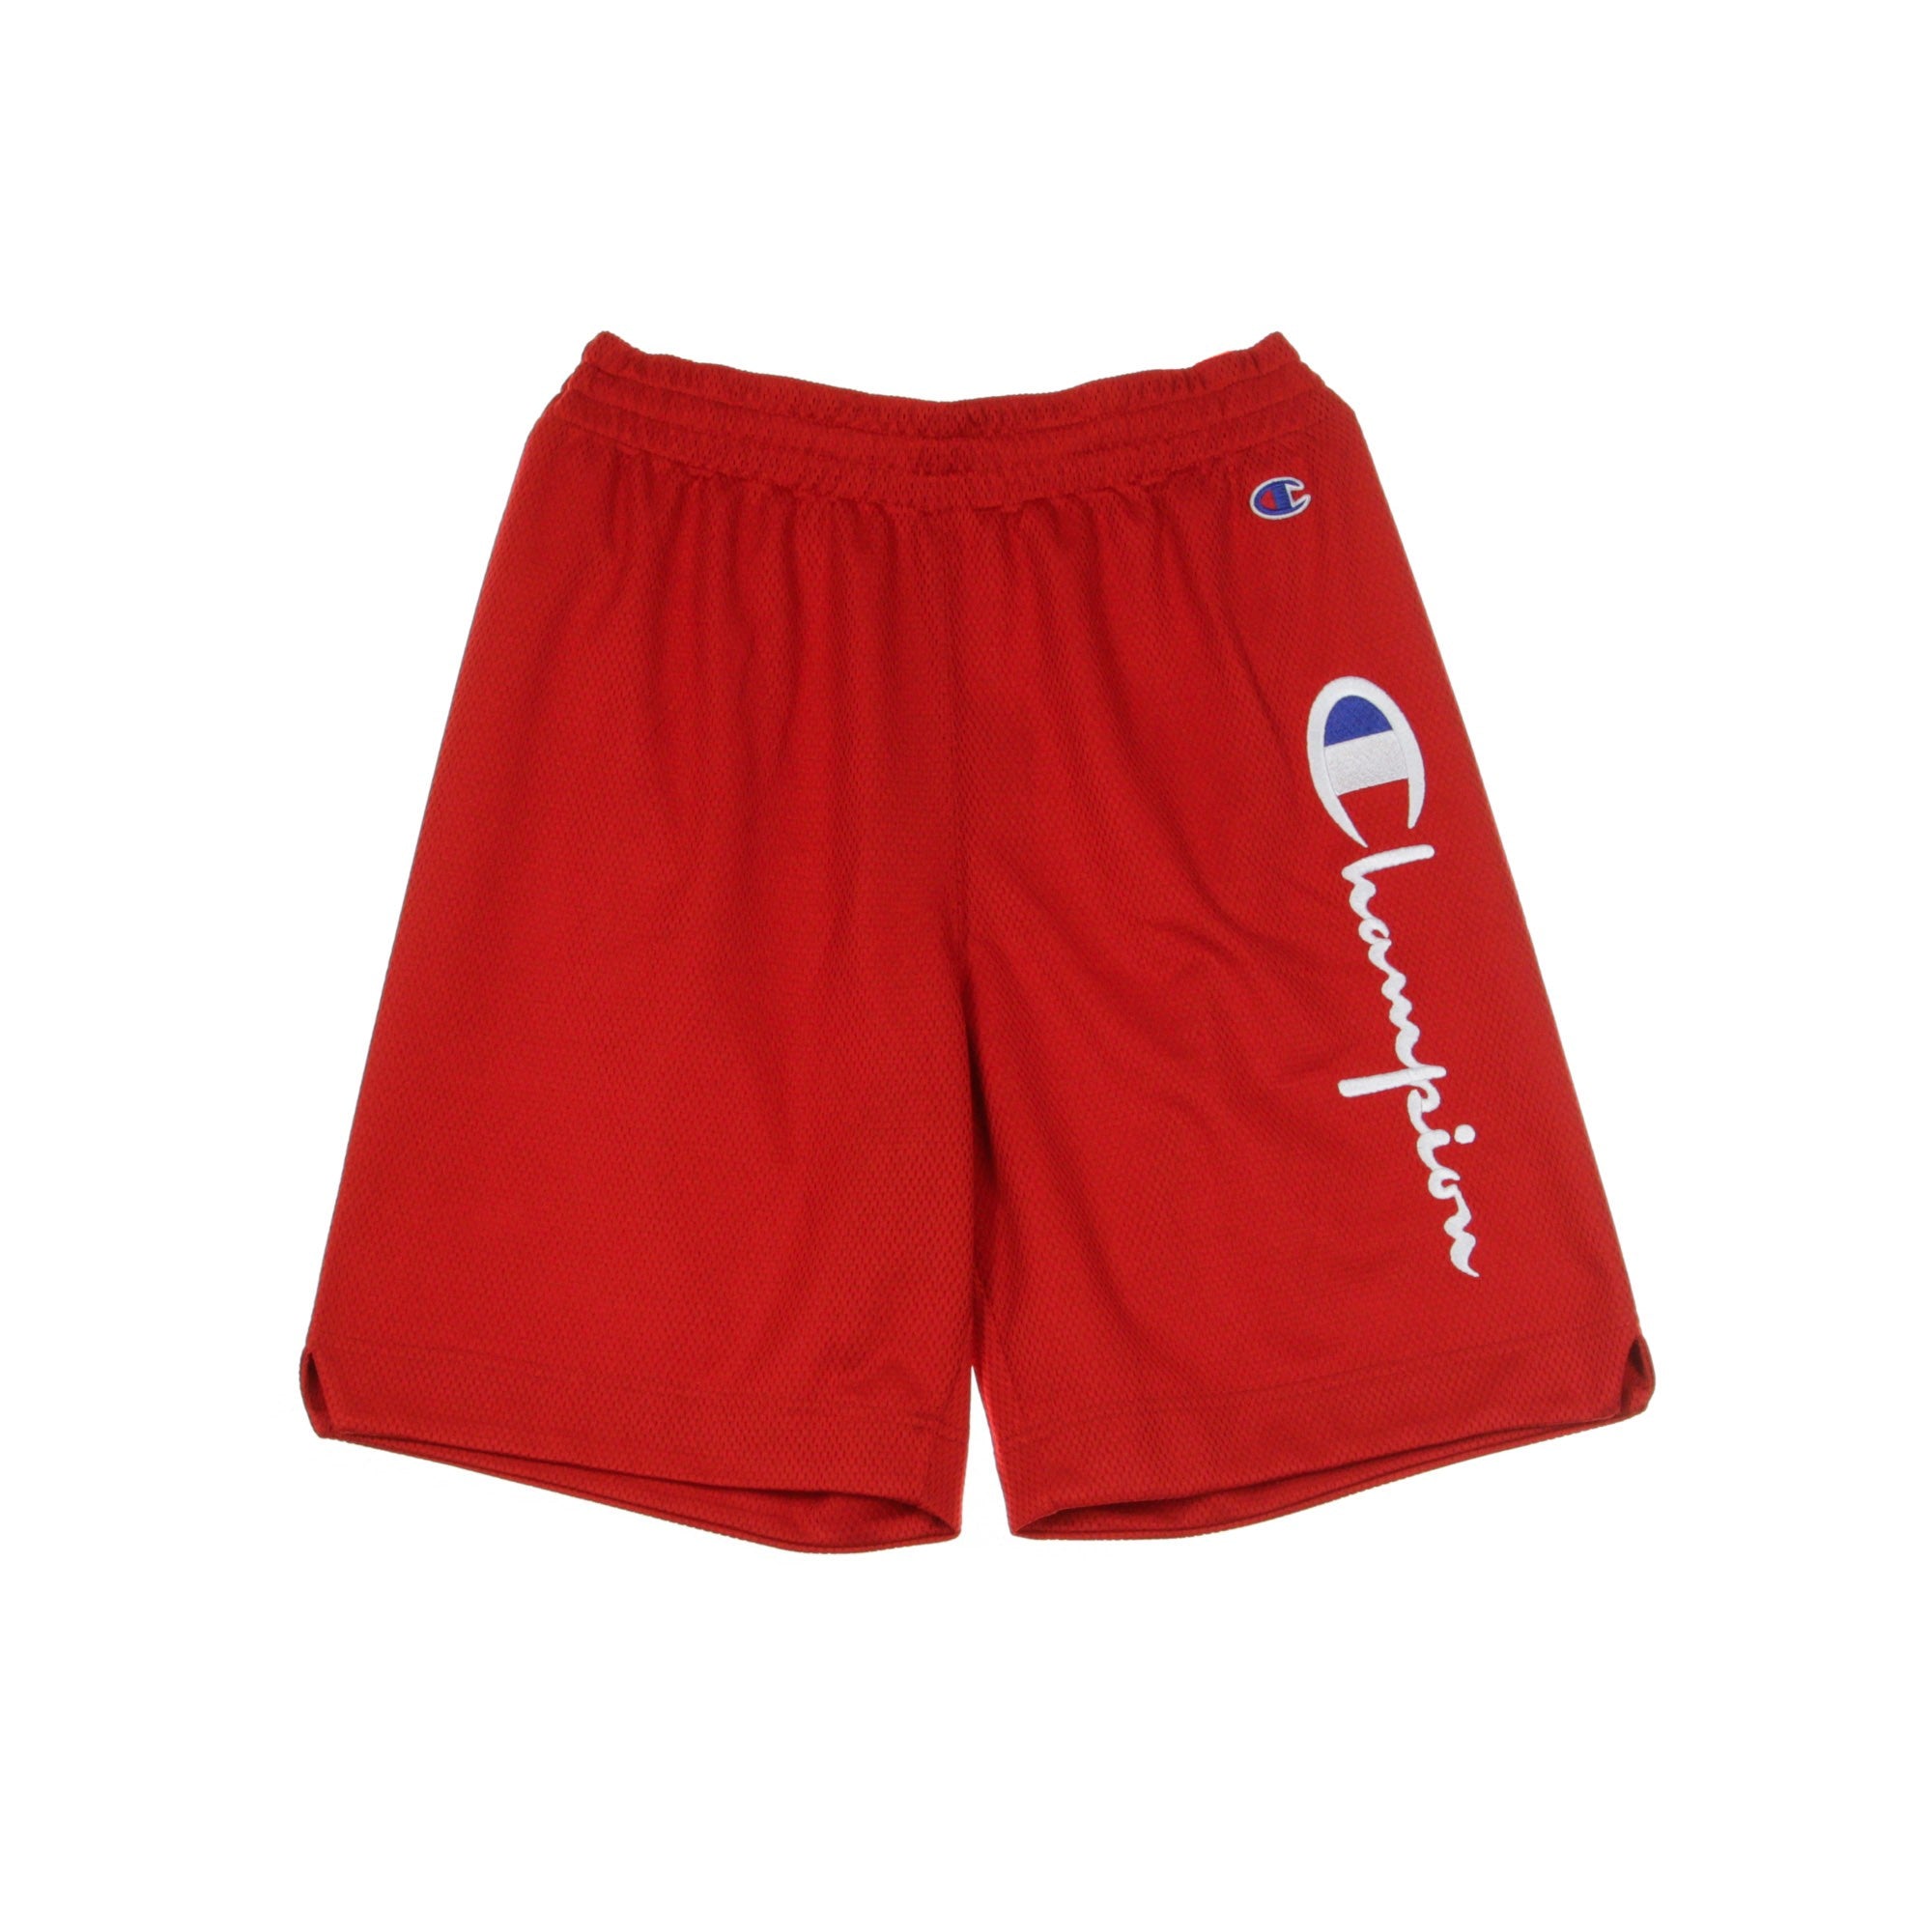 Pantaloncino Tipo Basket Uomo Shorts Red